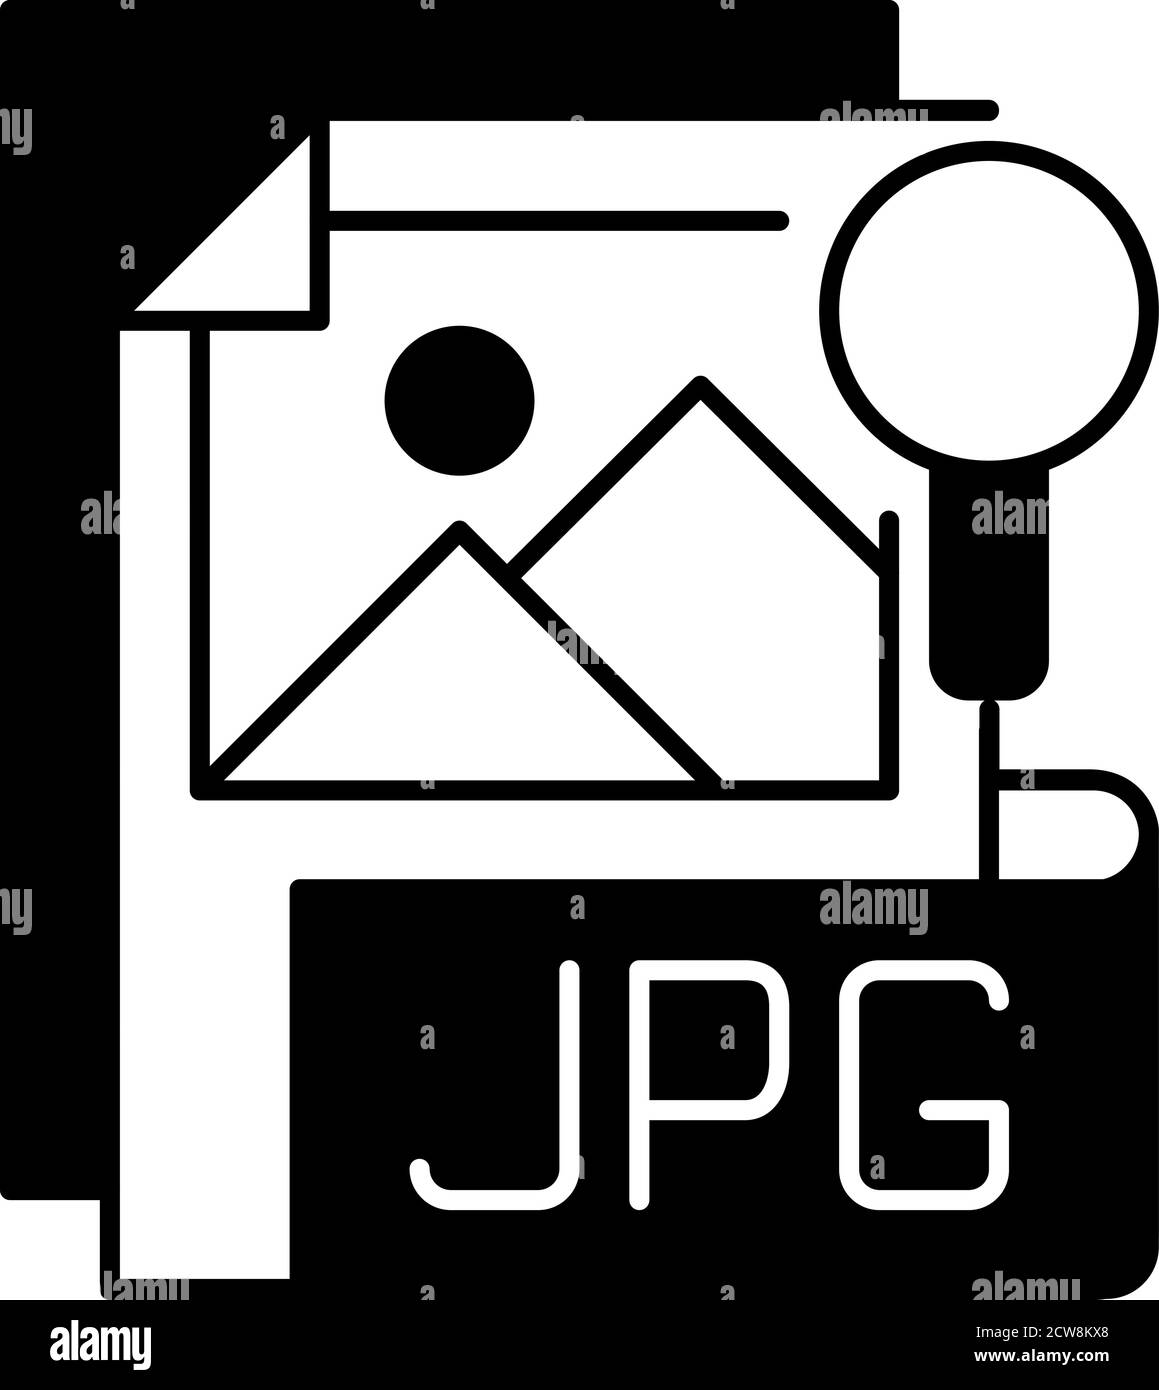 Icona lineare nera del file JPG Illustrazione Vettoriale